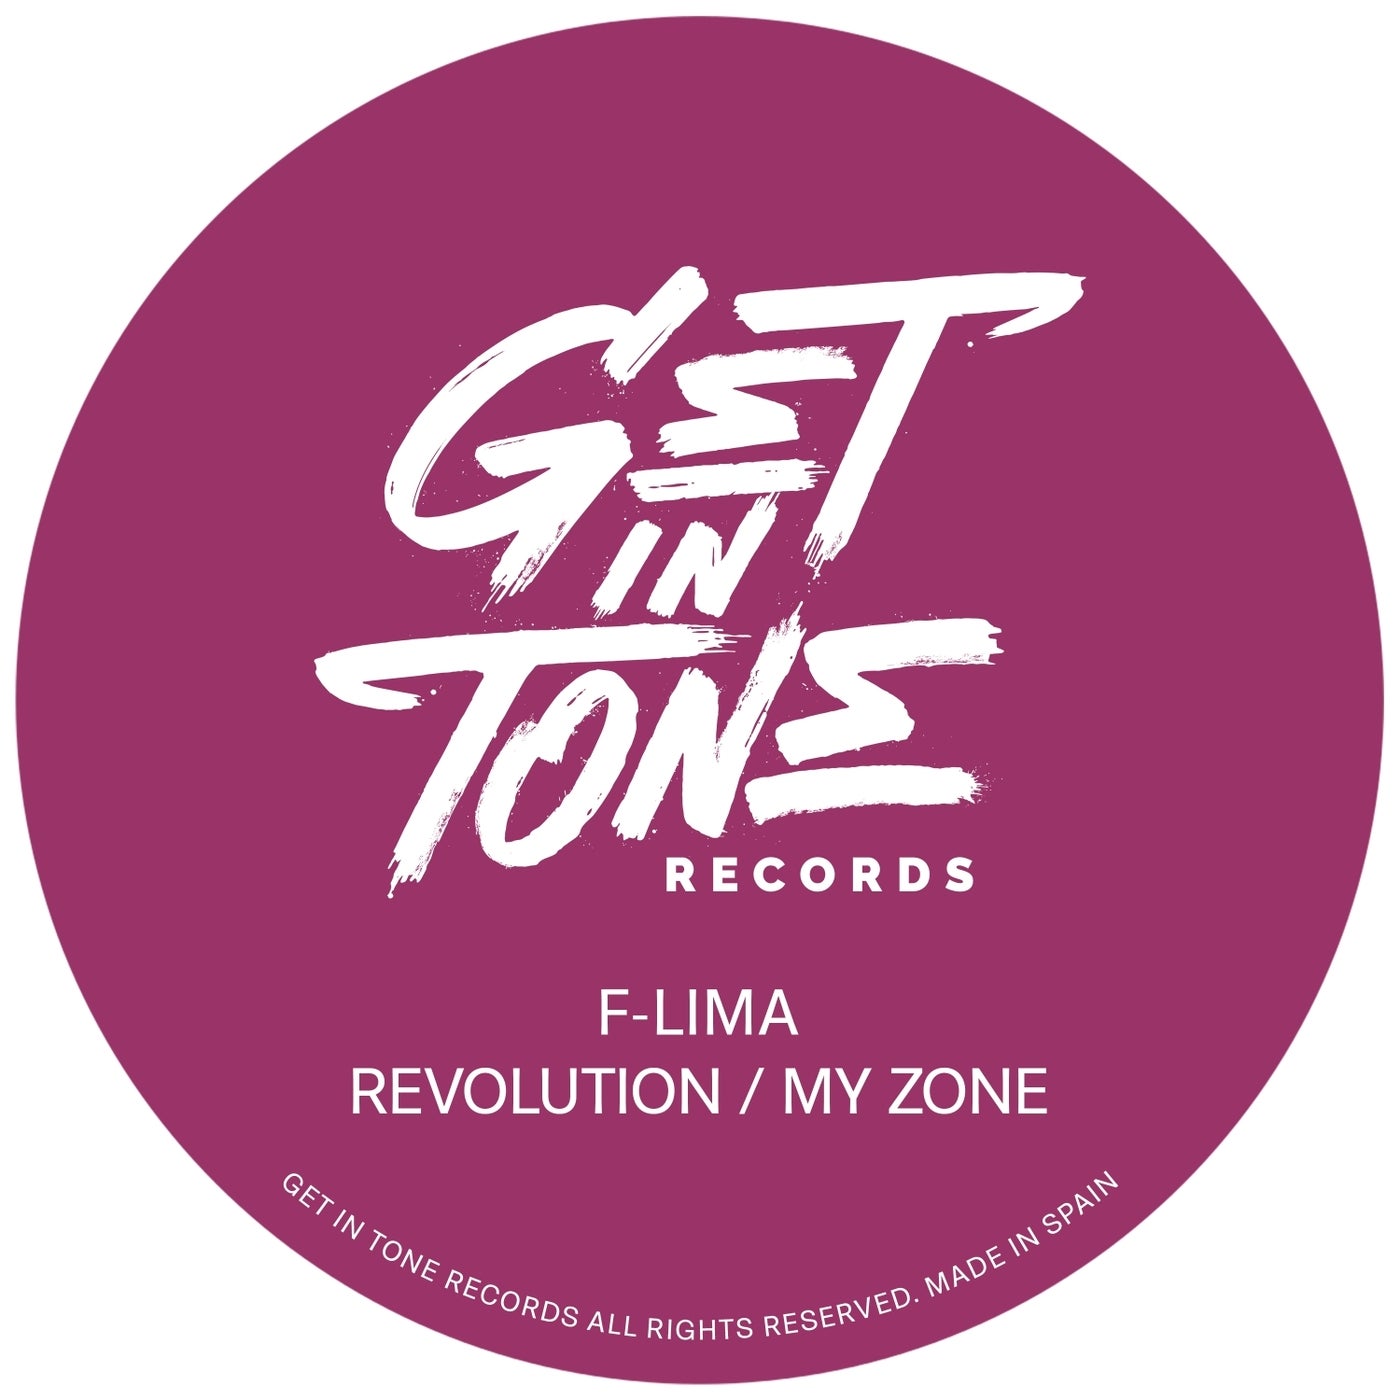 Revolution / My Zone